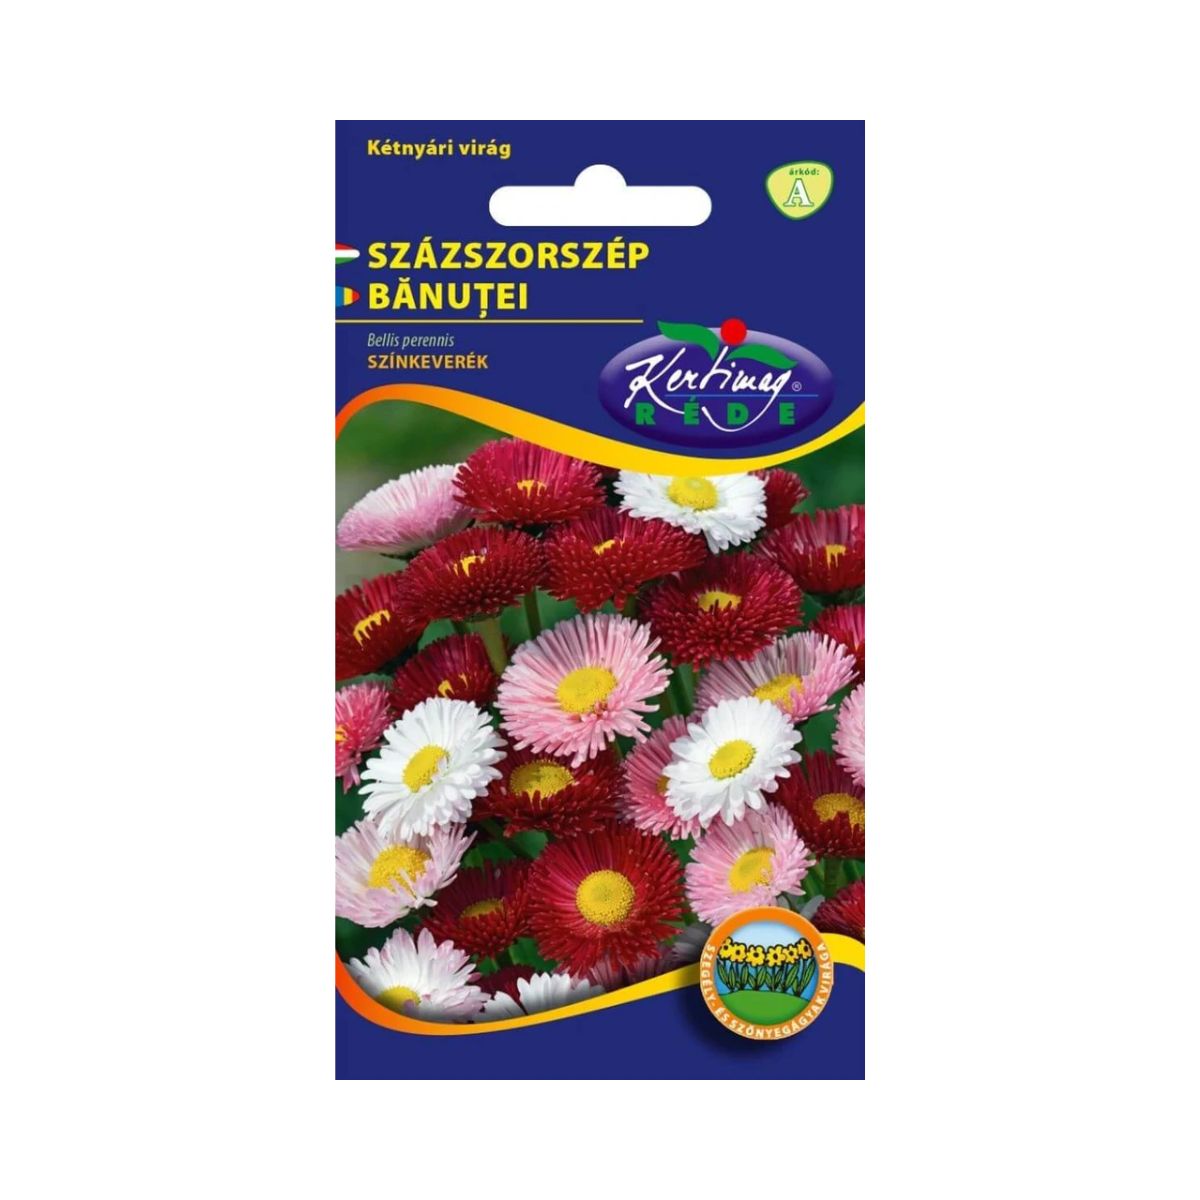 Seminte flori - Seminte de BANUTEI mix, KERTIMAG, hectarul.ro